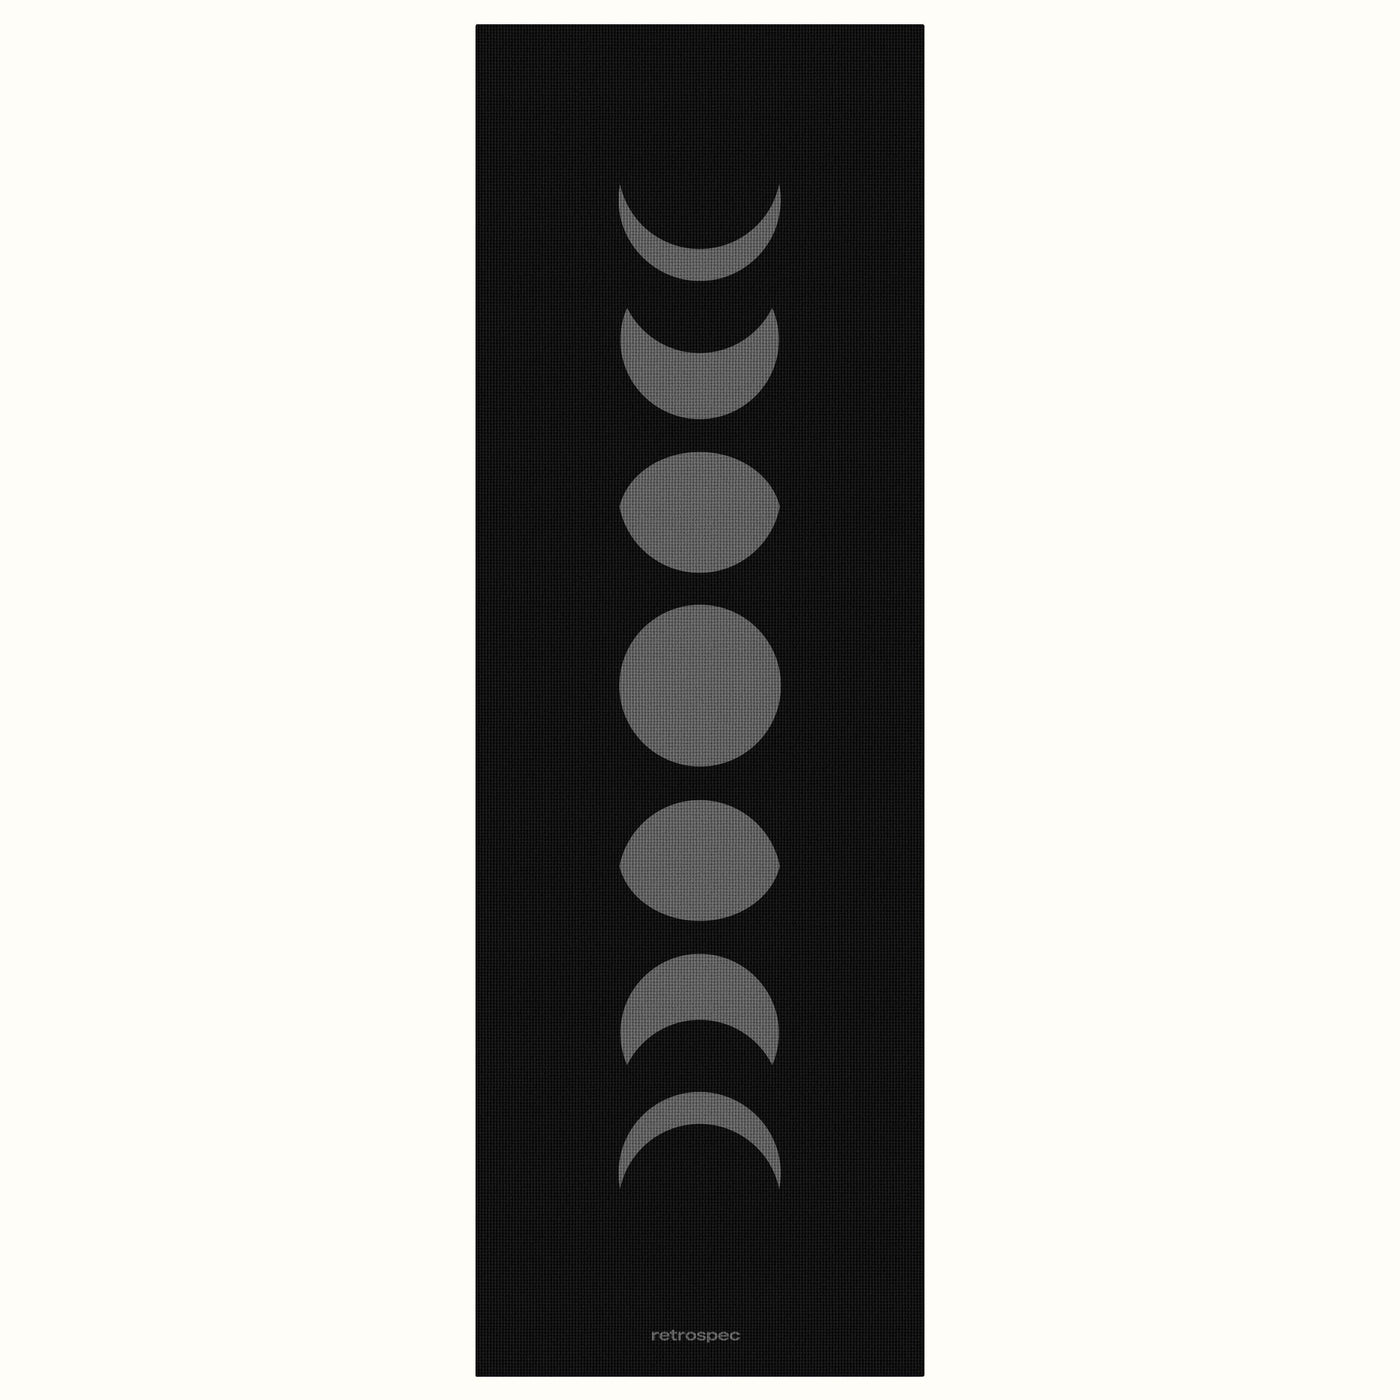 Pismo Yoga Mat 5mm | Lunar